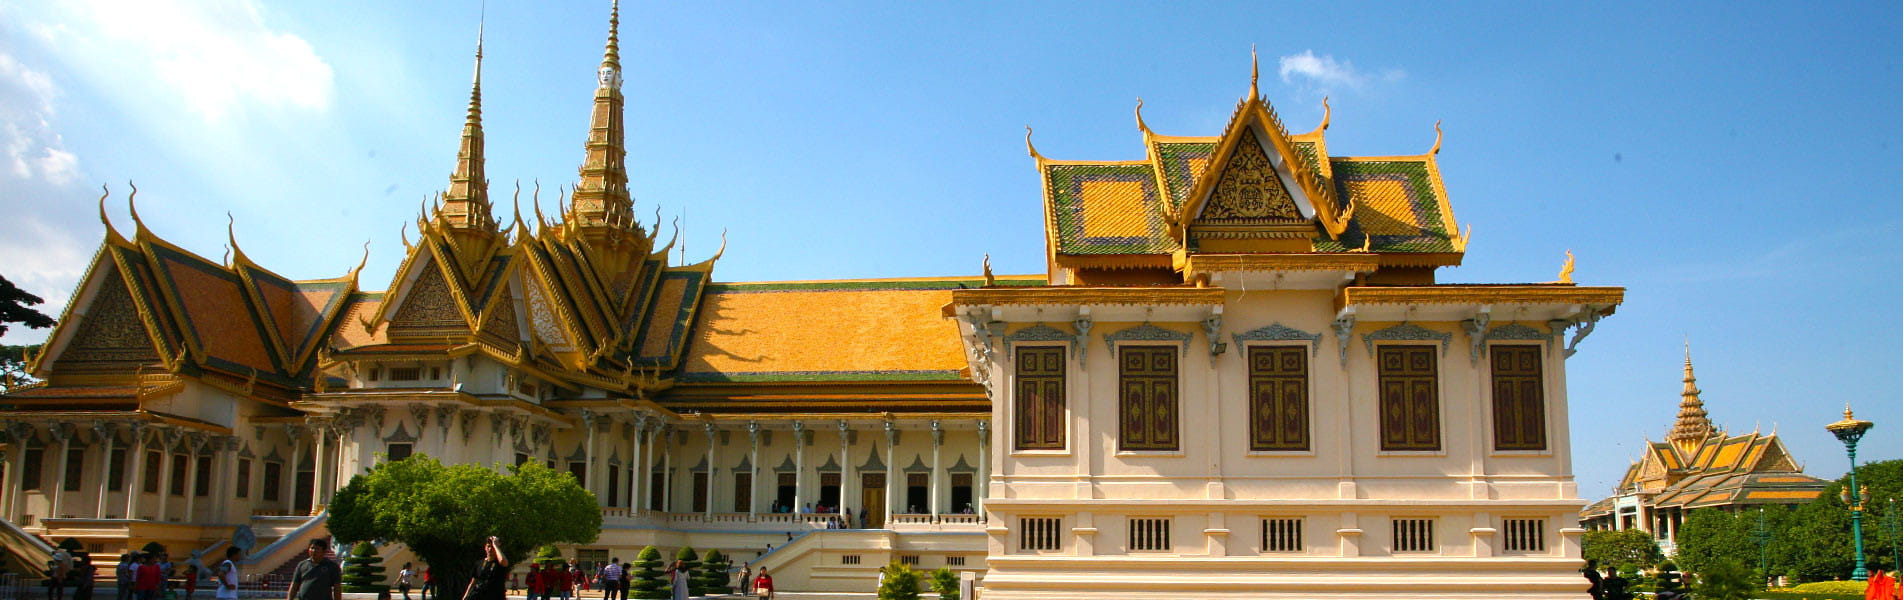 Royal Palace, Cambodia